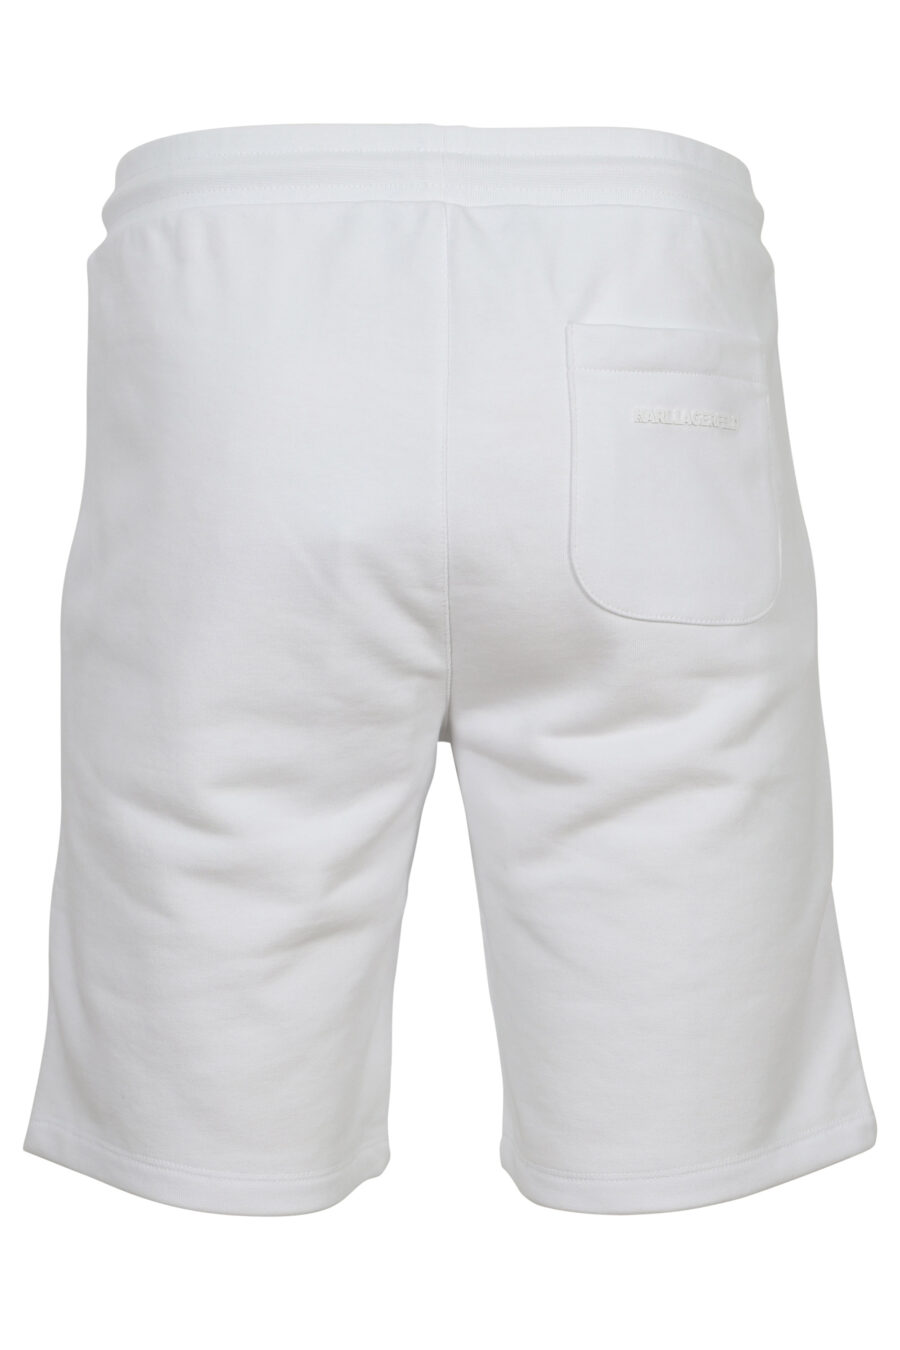 Pantalón de chándal corto blanco con minilogo azul en goma - 4062226782234 2